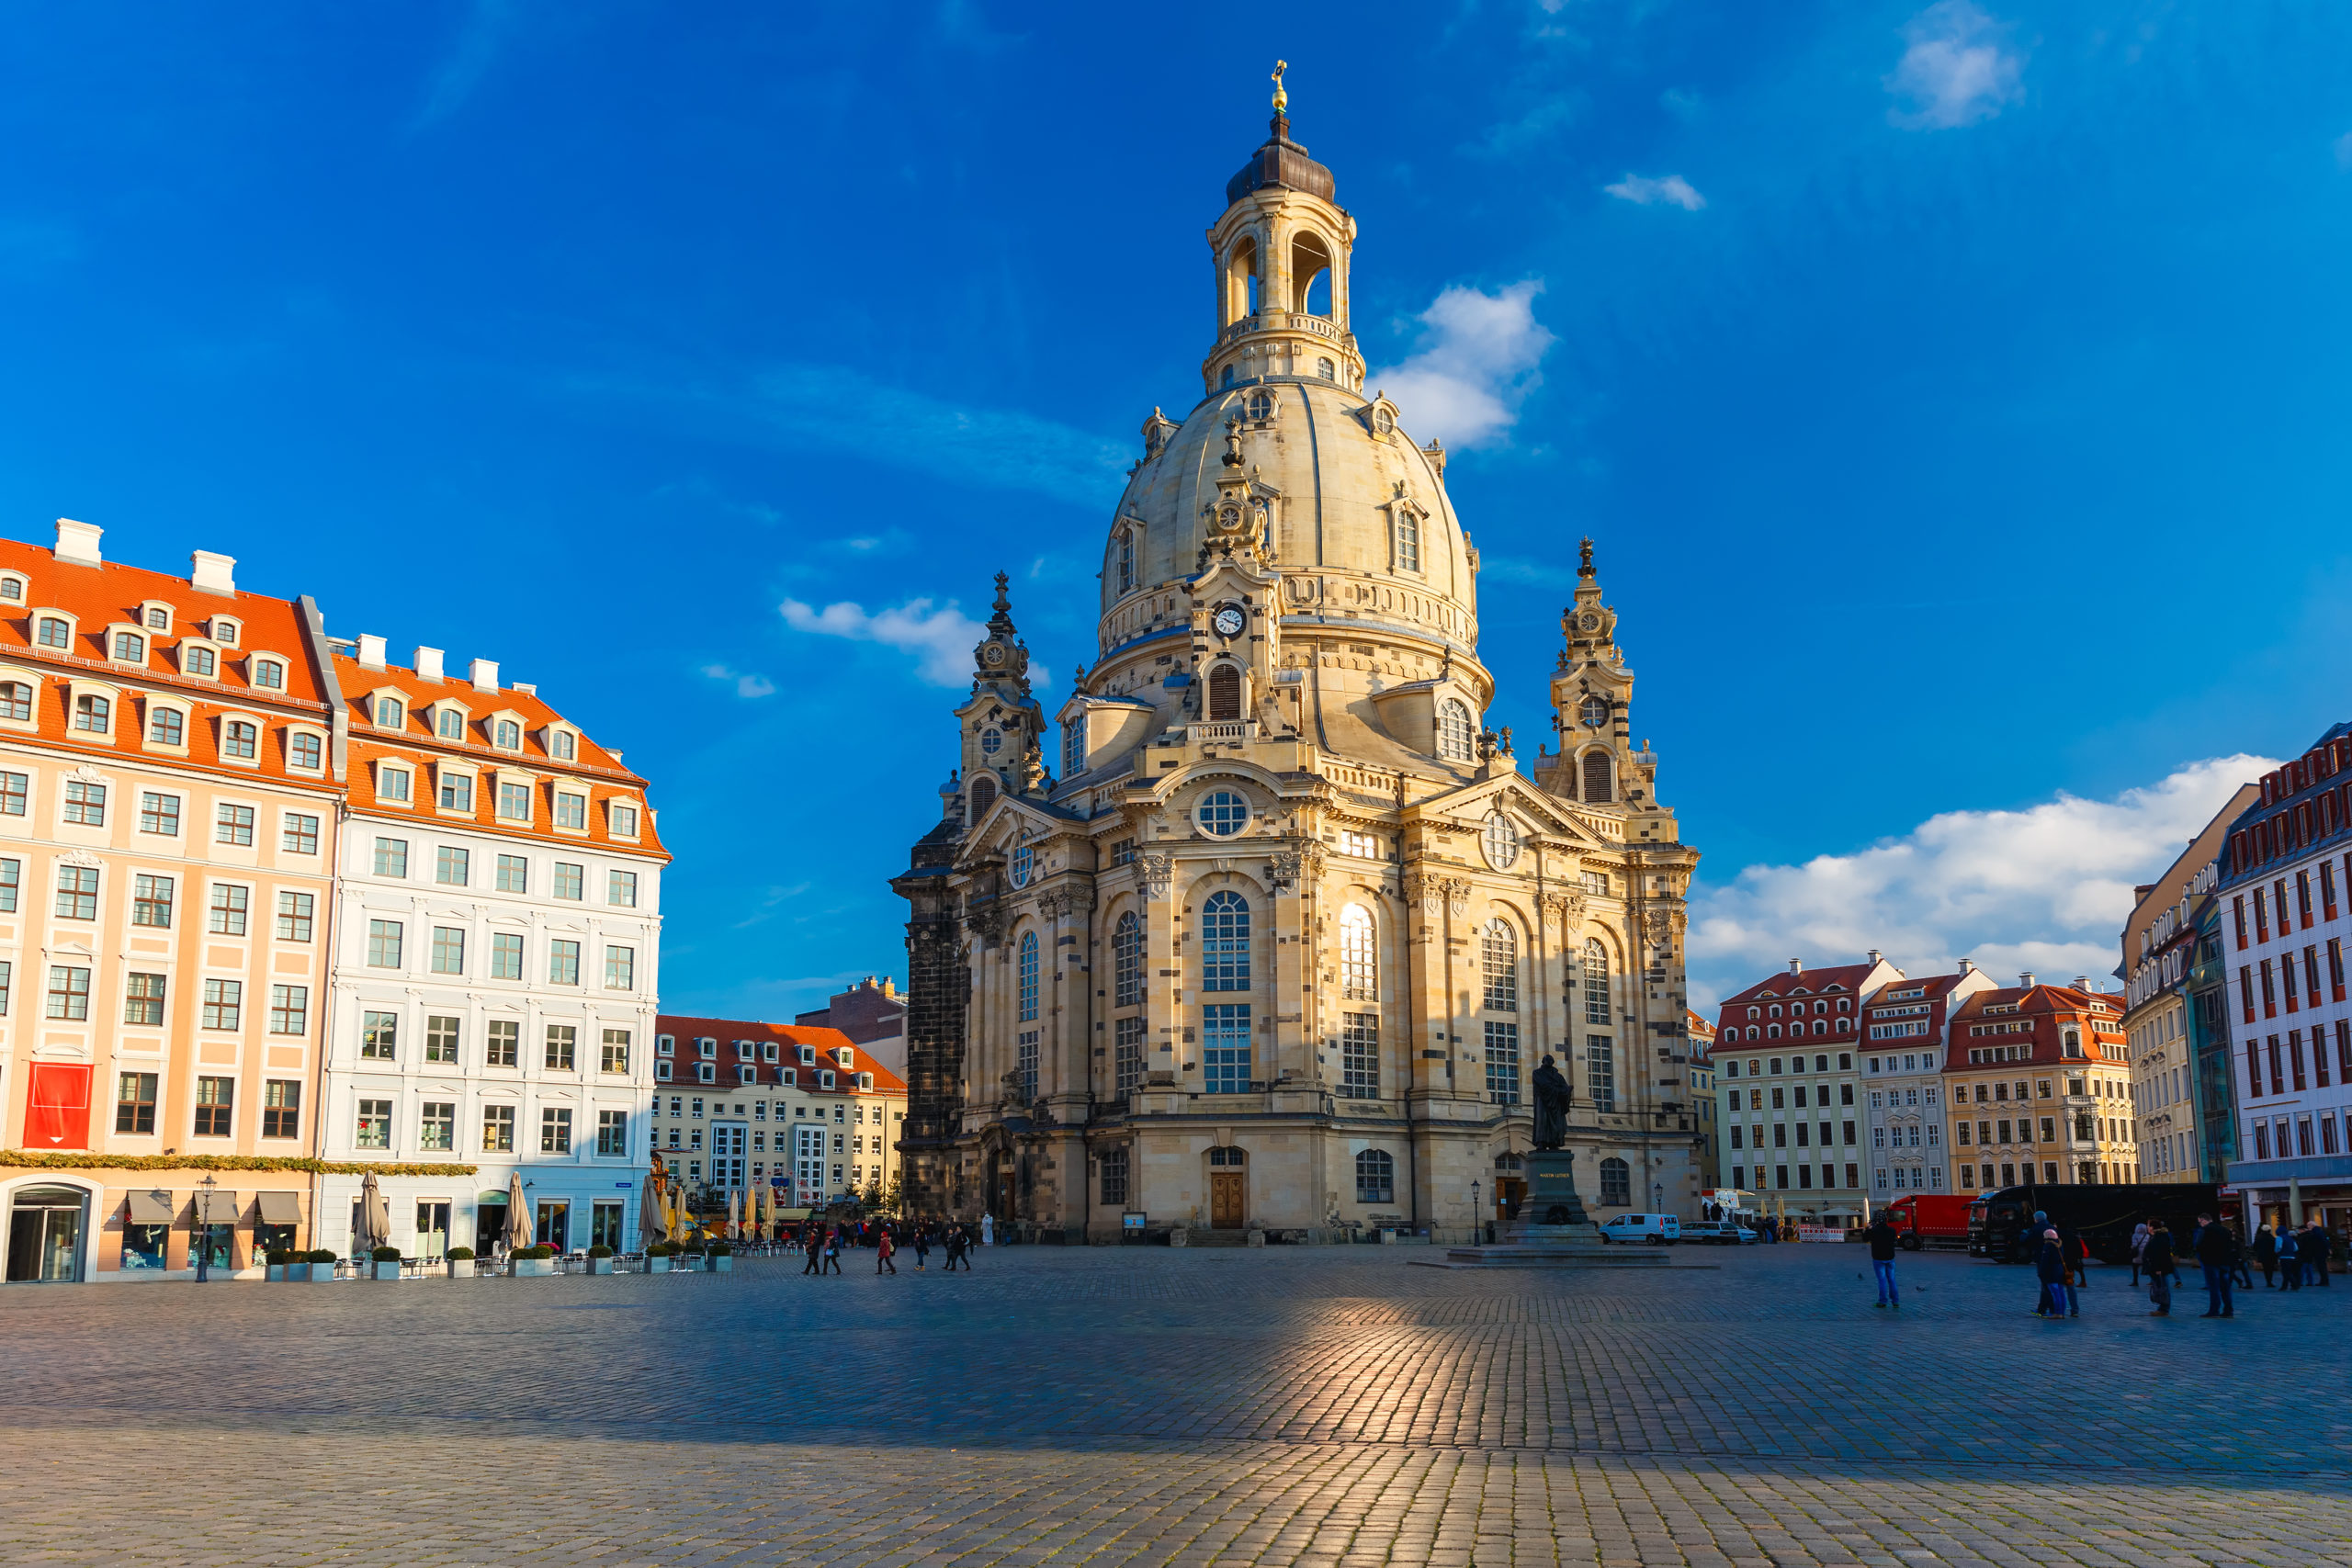 Foto von der Frauenkirche in Dresden